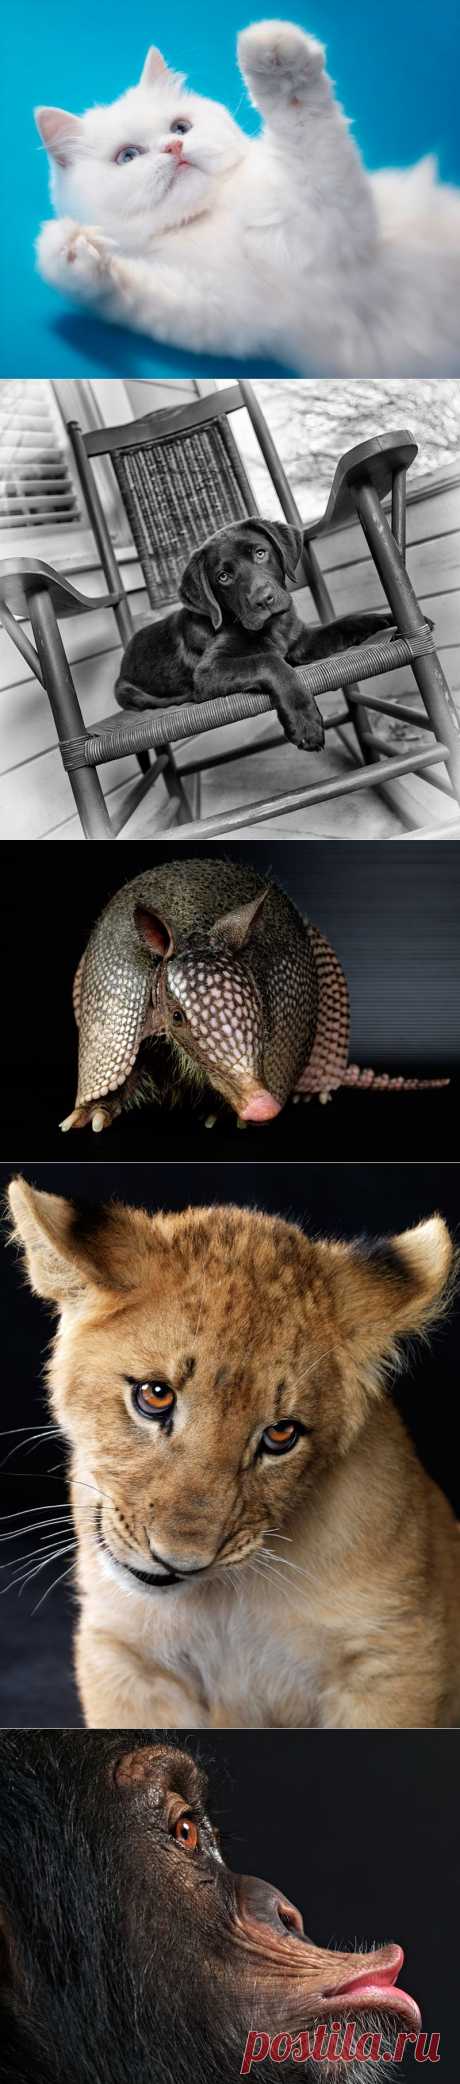 Портреты животных от Леннетт Ньюэлл | В мире интересного